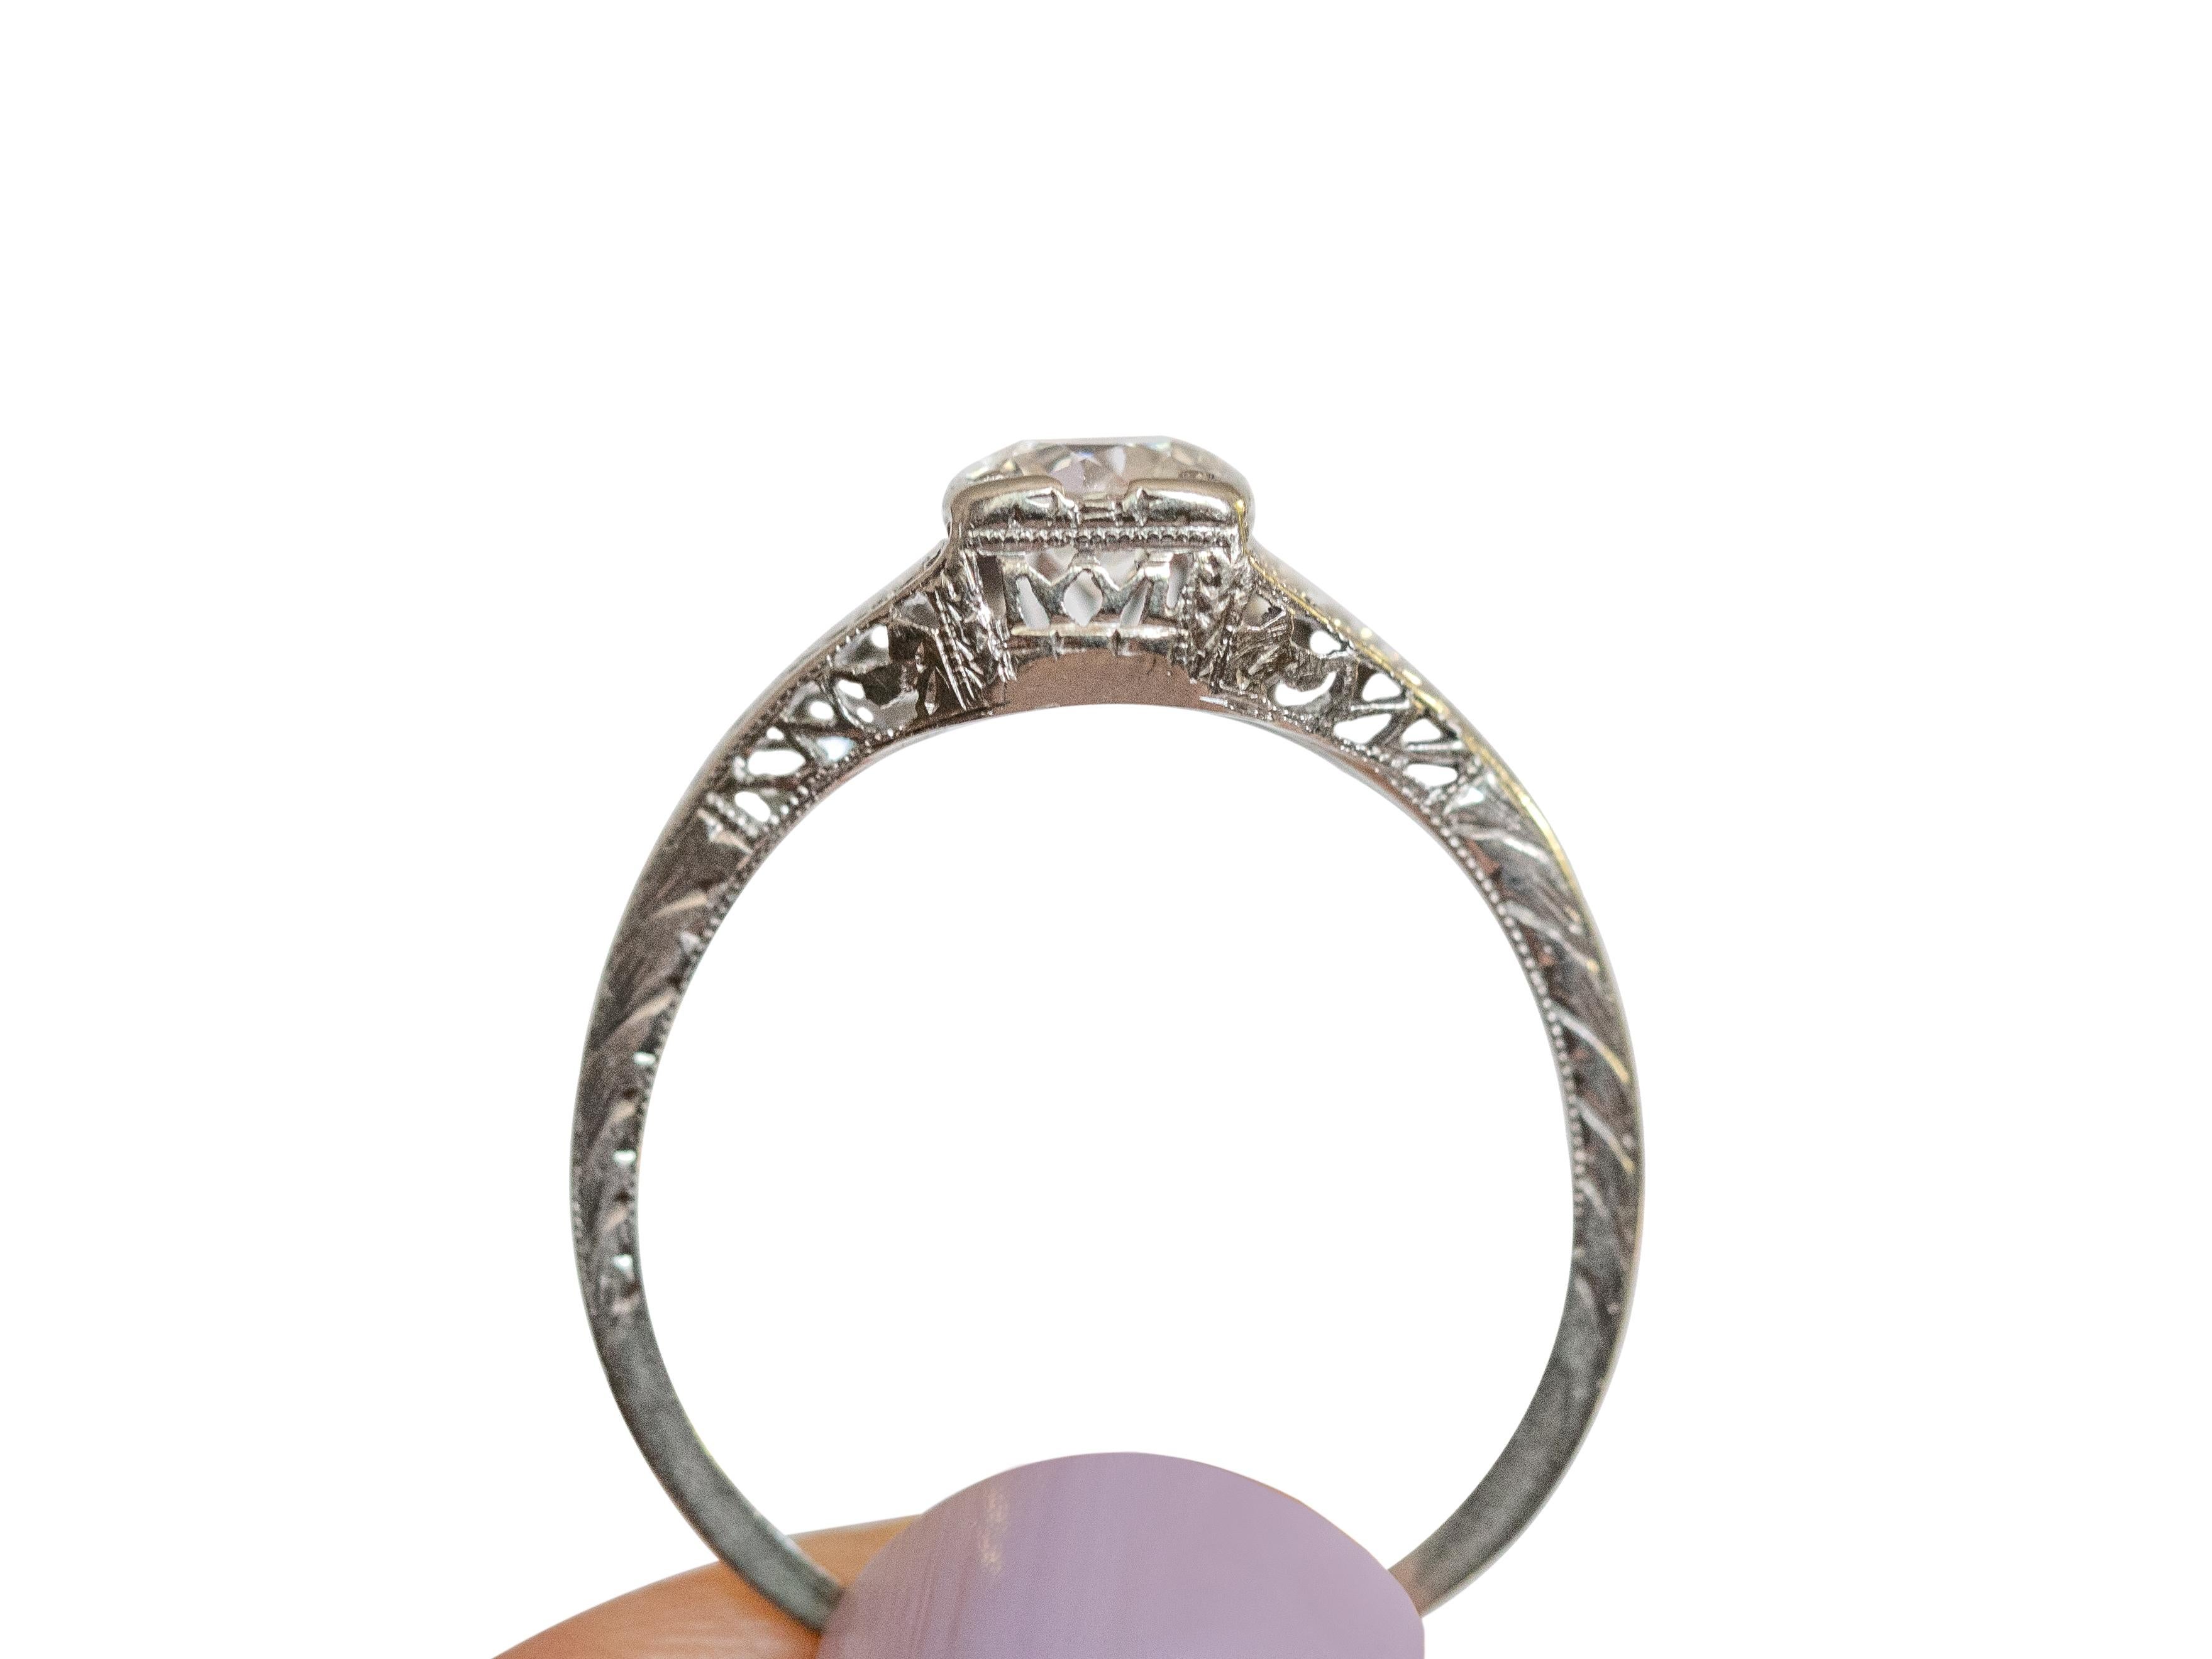 Art Deco .60 Carat Diamond Platinum Engagement Ring